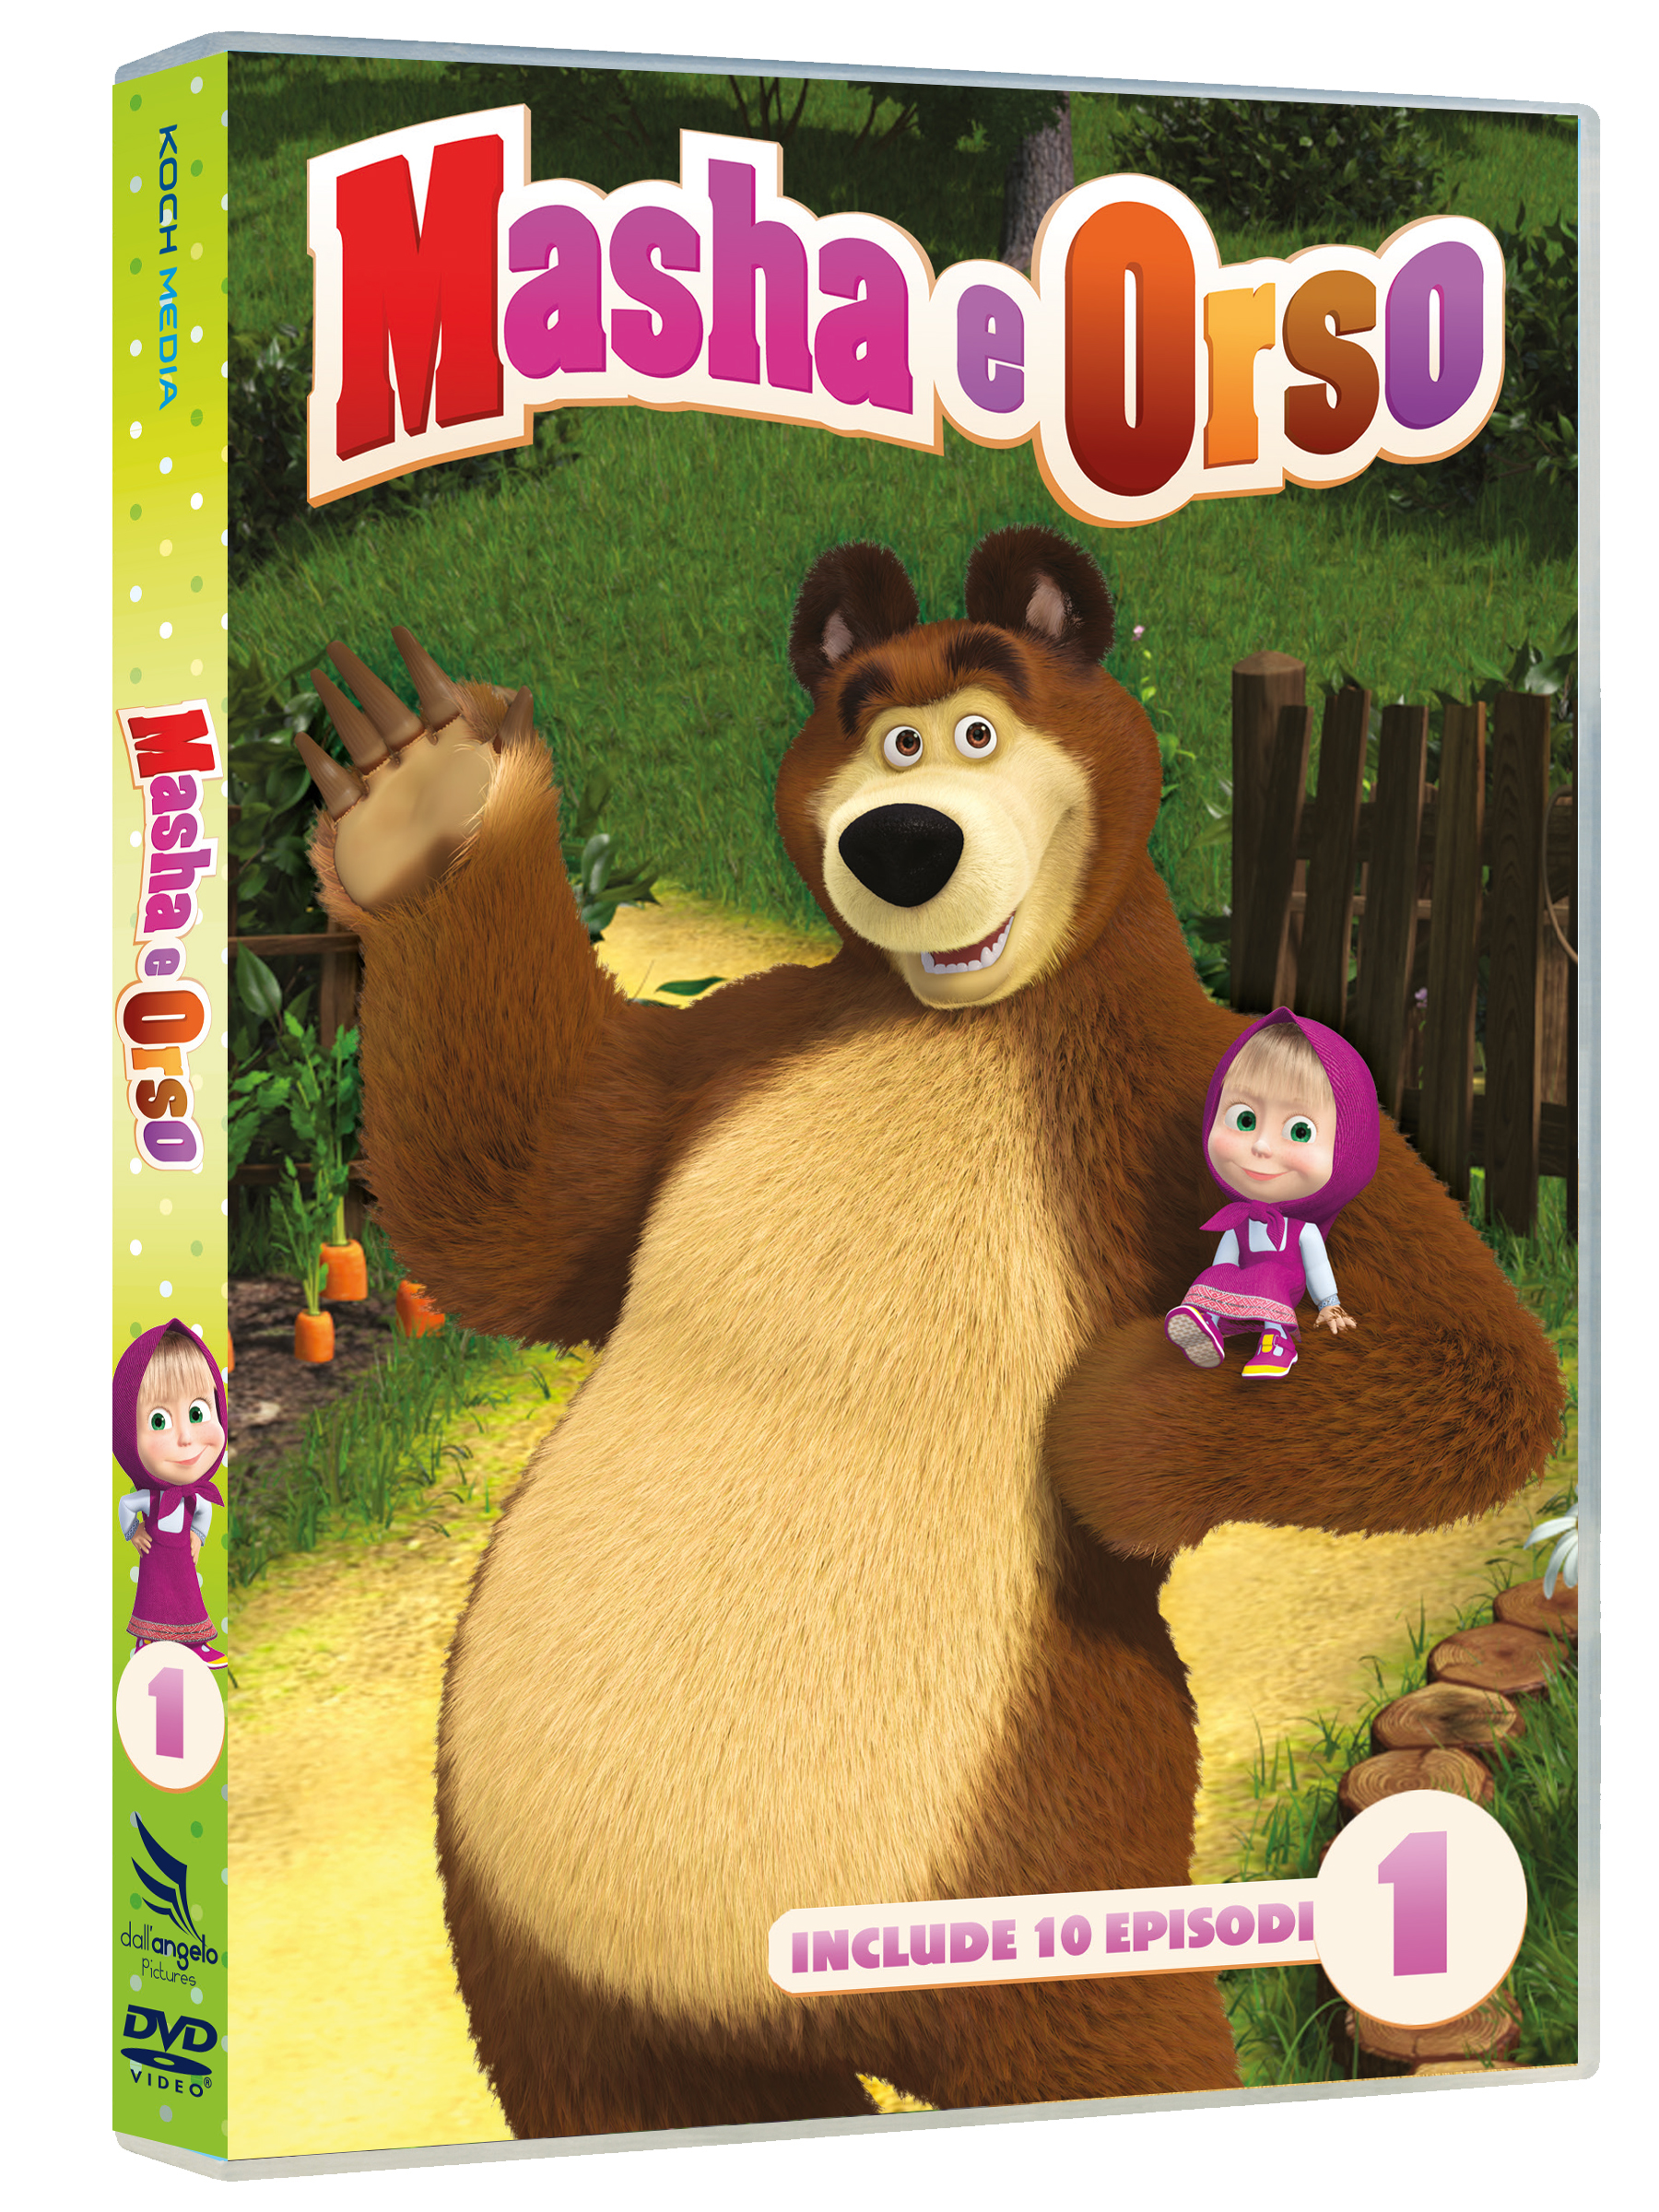 Scatta una foto e ti regaliamo due DVD di Masha e Orso.